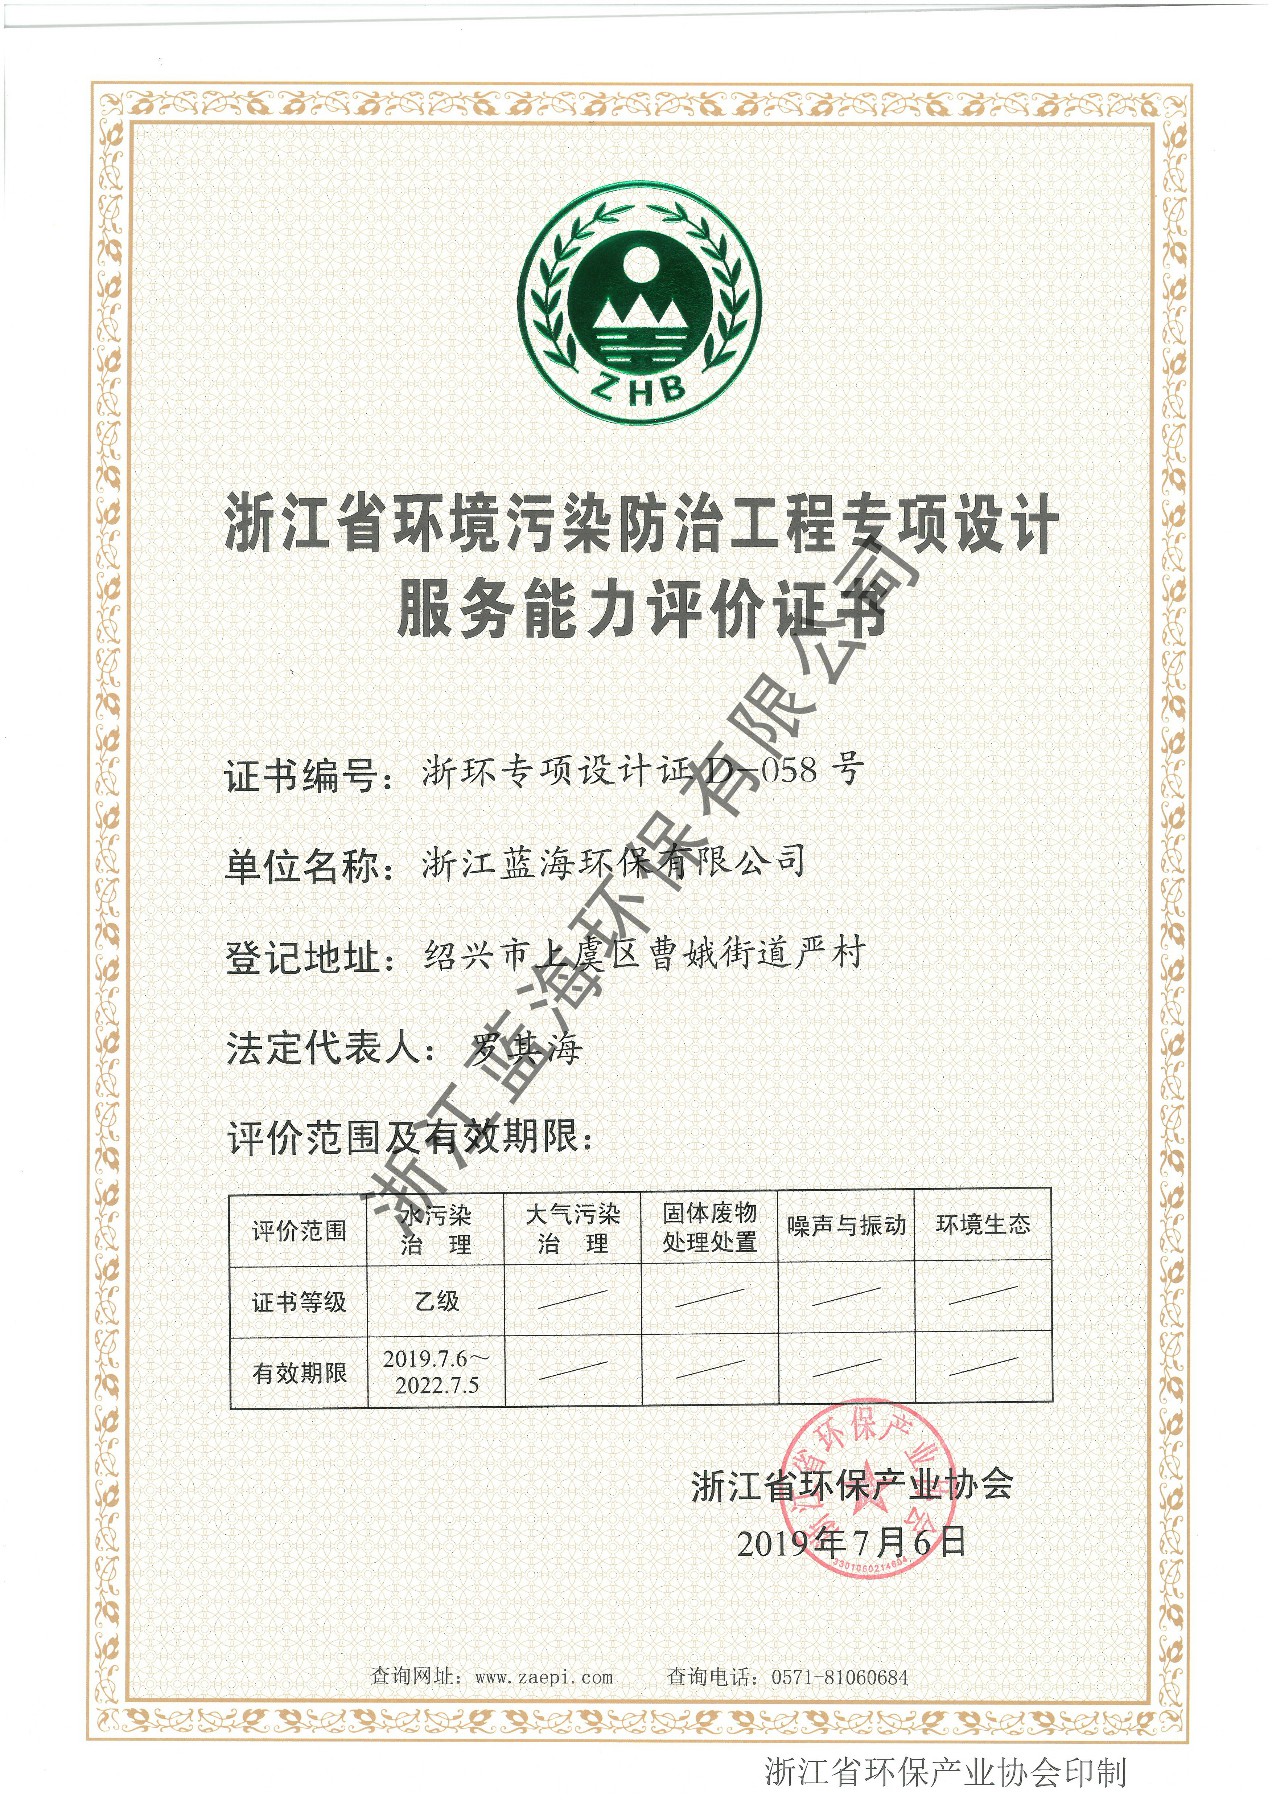 环保协会环境污染治理设计服务能力评价证书